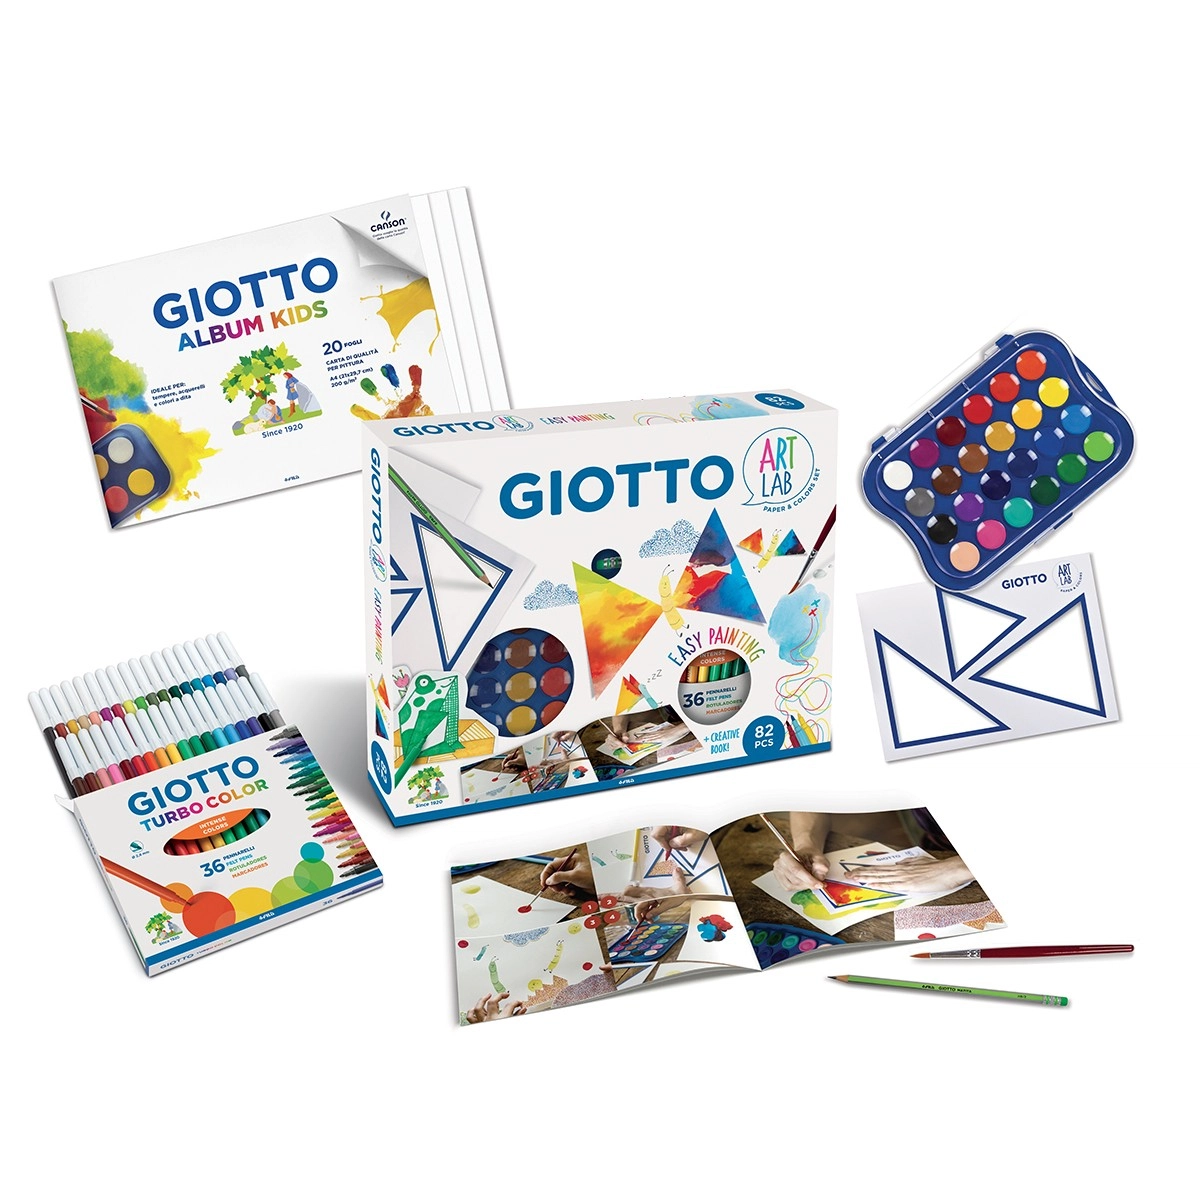 Fila Giotto Album Kids Carta Colorata 120 gr/m²